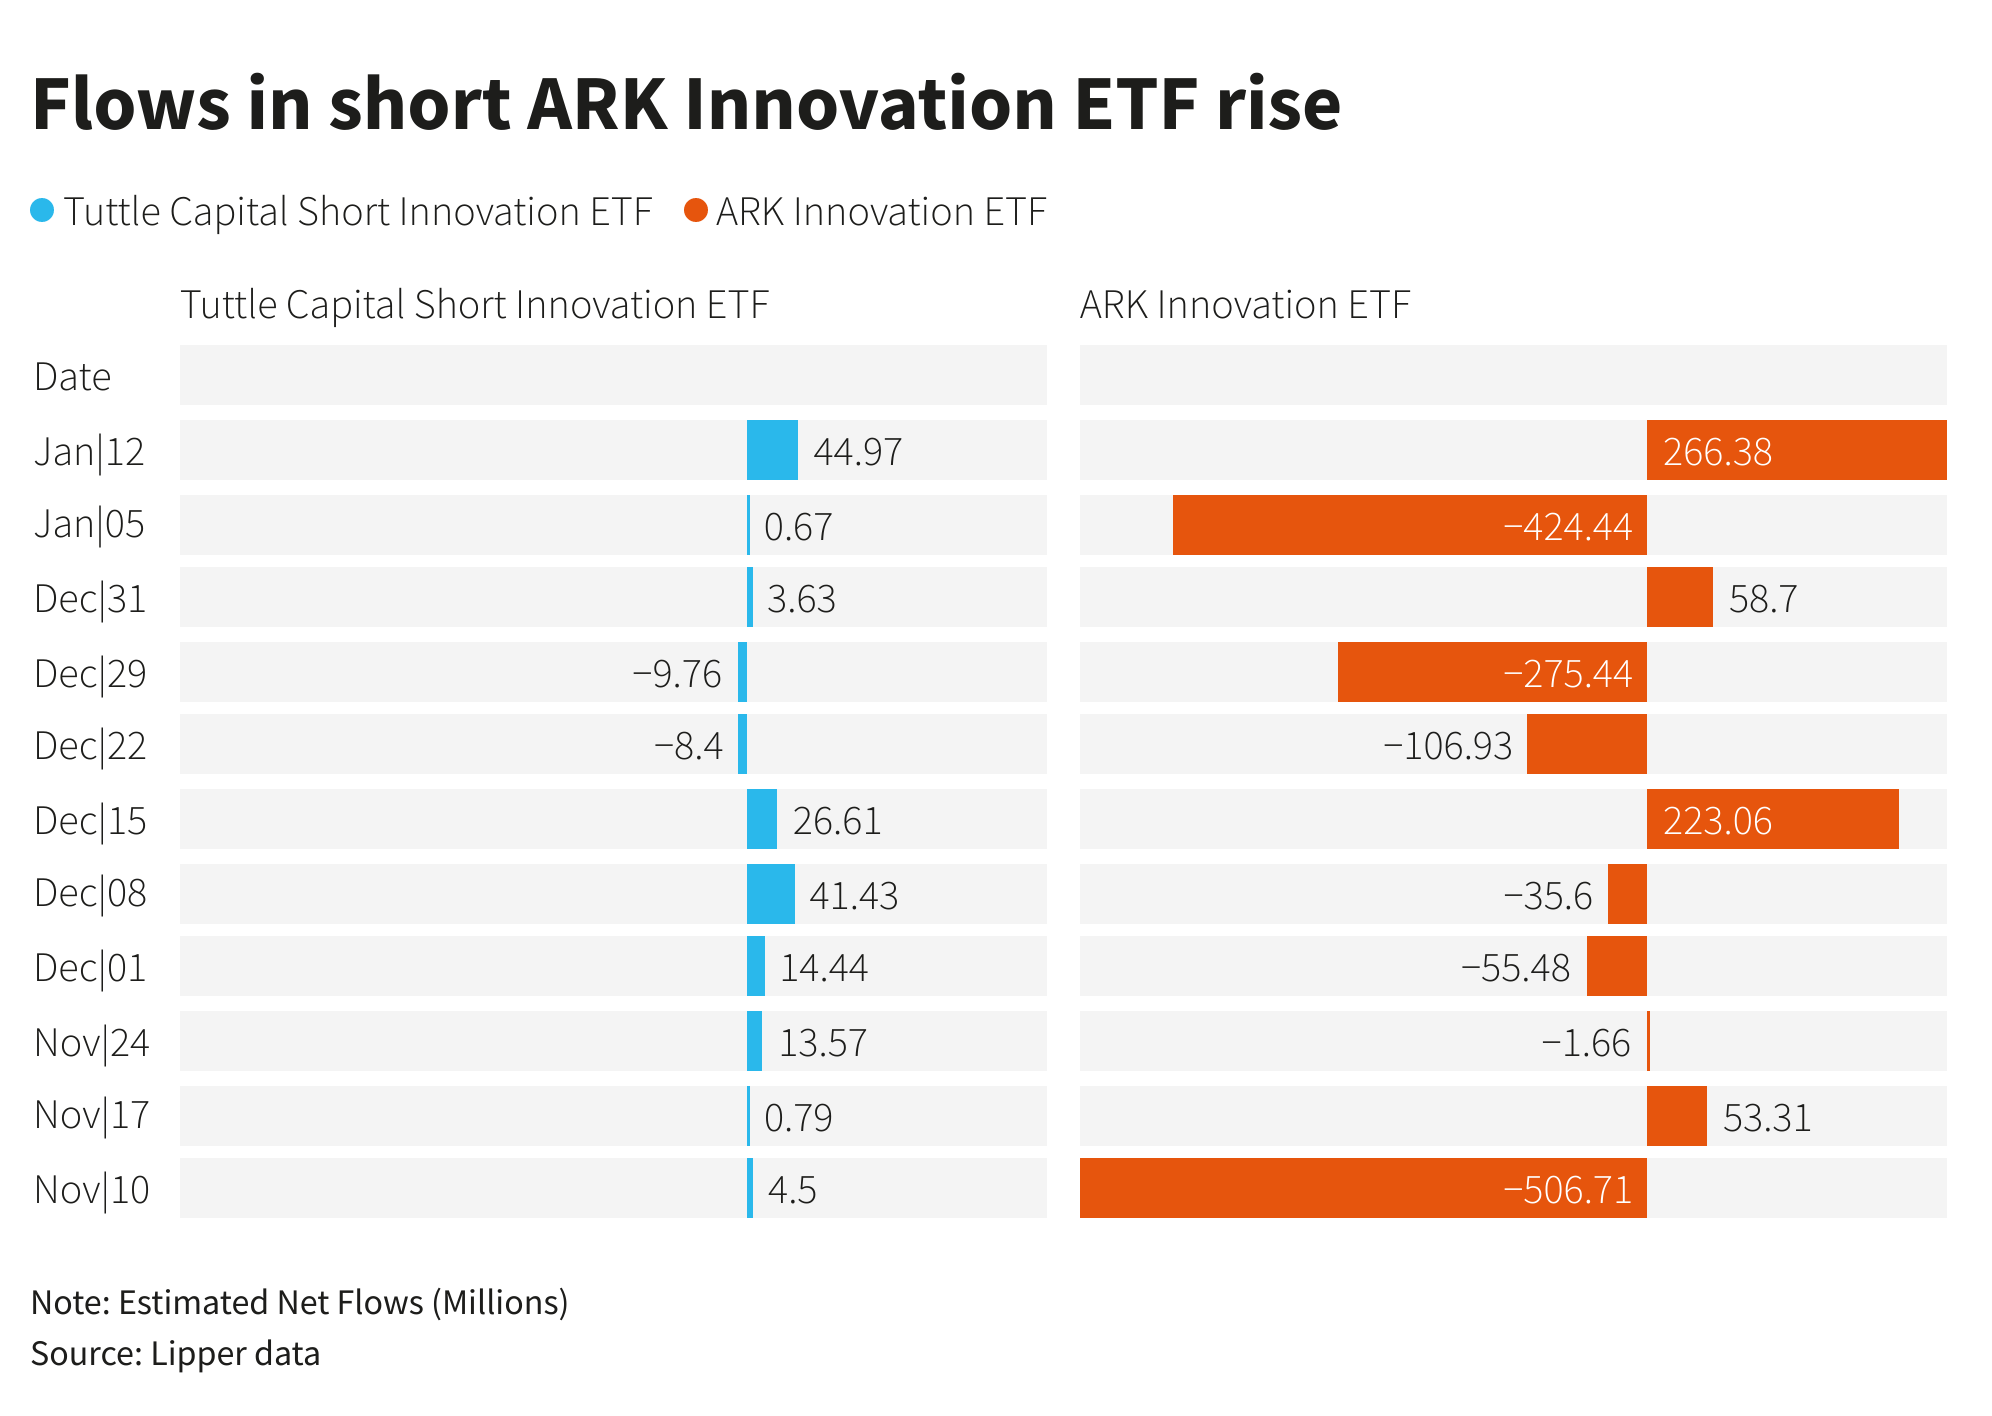 Flows in short ARK Innovation ETF rise